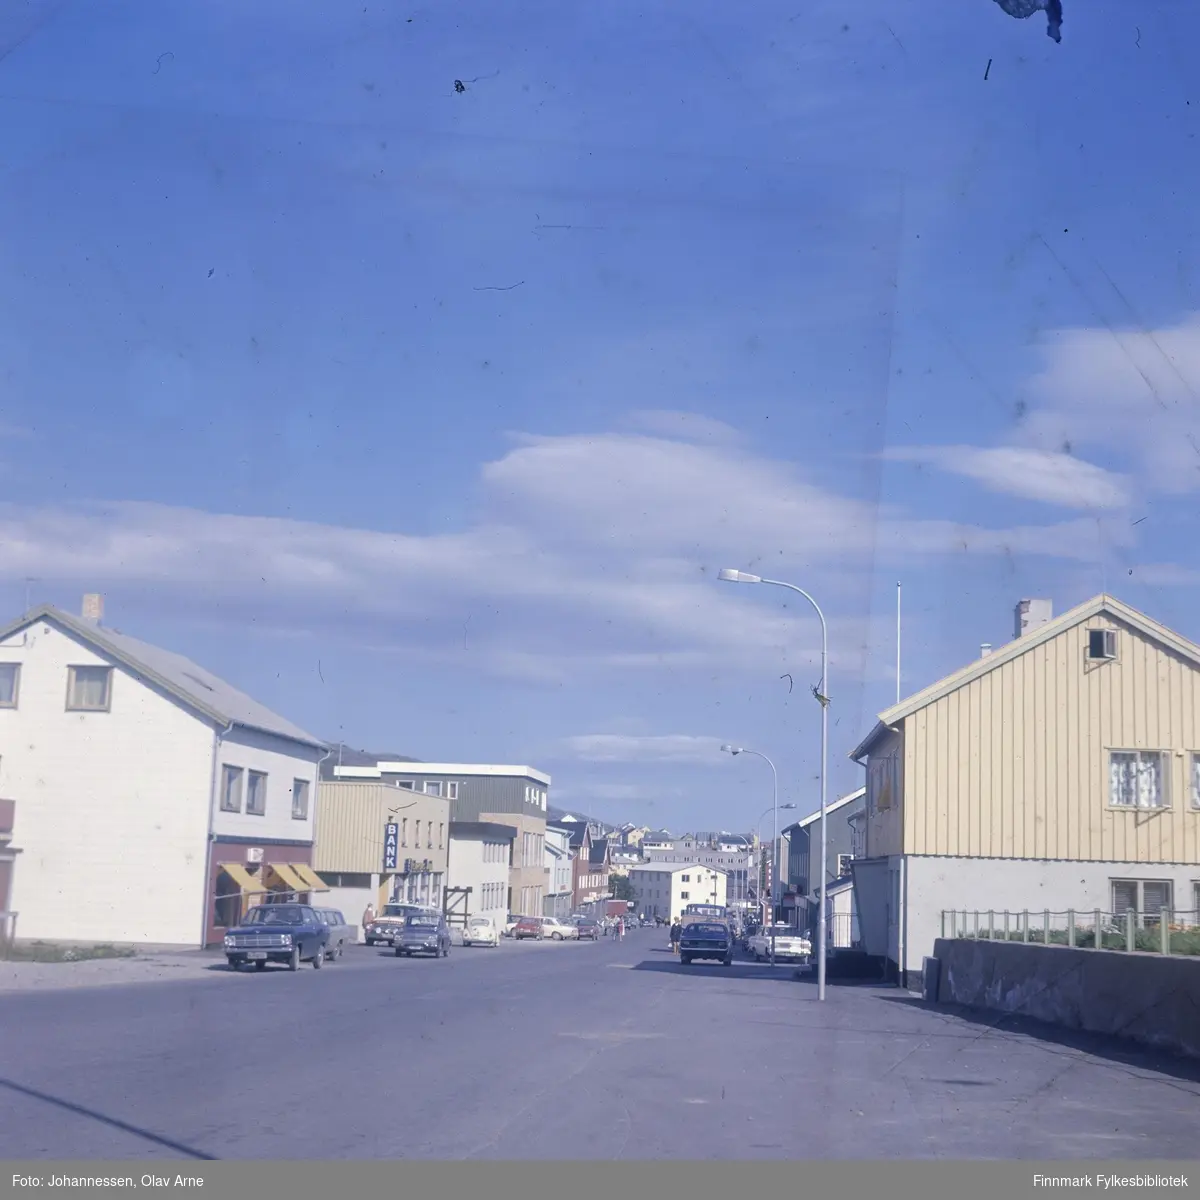 Foto av gateparti i Båtsfjord, Finnmark 

Dagens Hindbergata

Bygg som er nr. 2 fra venstre er Fiskernes bank. Man kan se flere biler parkert utenfor byggene og en ambulansebil

På den andre siden av gaten ser man Materialhandelen A/S, så Trygdekassen og Post

På den høyre siden av gaten ser man et par taxier parkert

Foto trolig tatt på 1960-tallet
